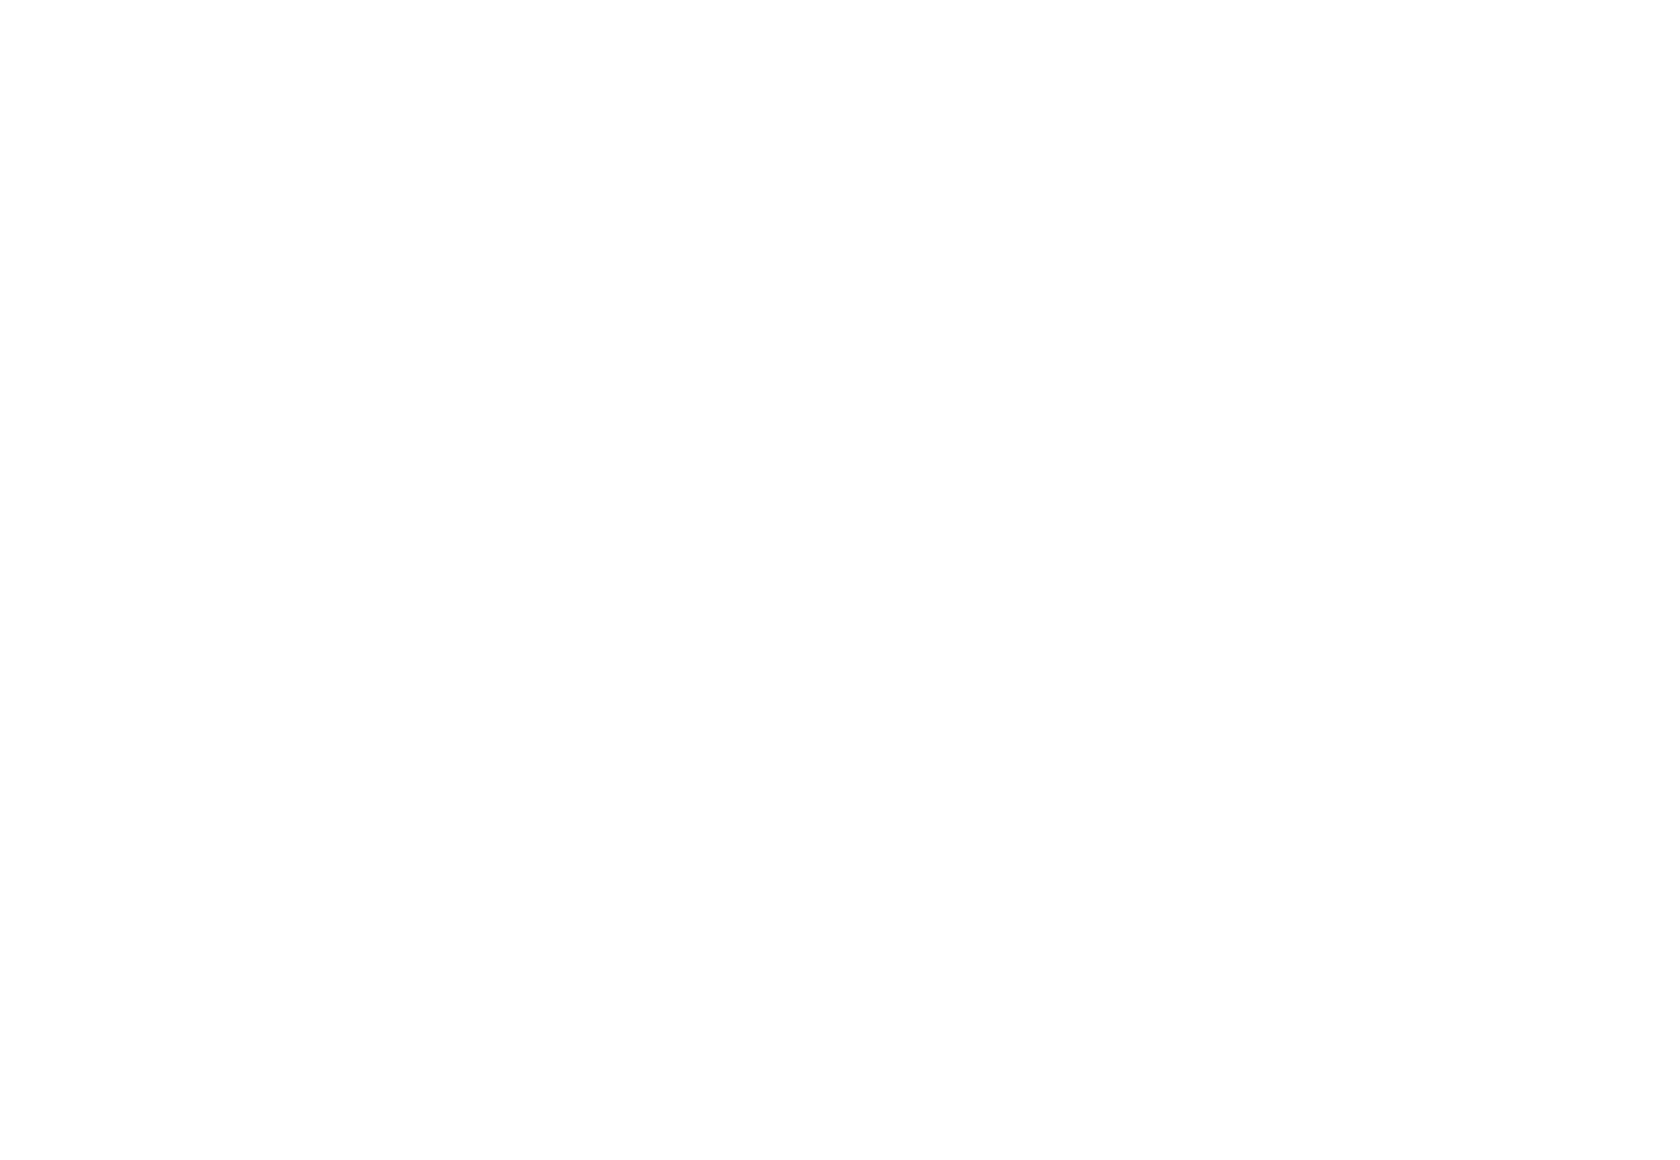 Картинка монитора с планшетом - сайт производителя гусиного пуха - мануфакт про